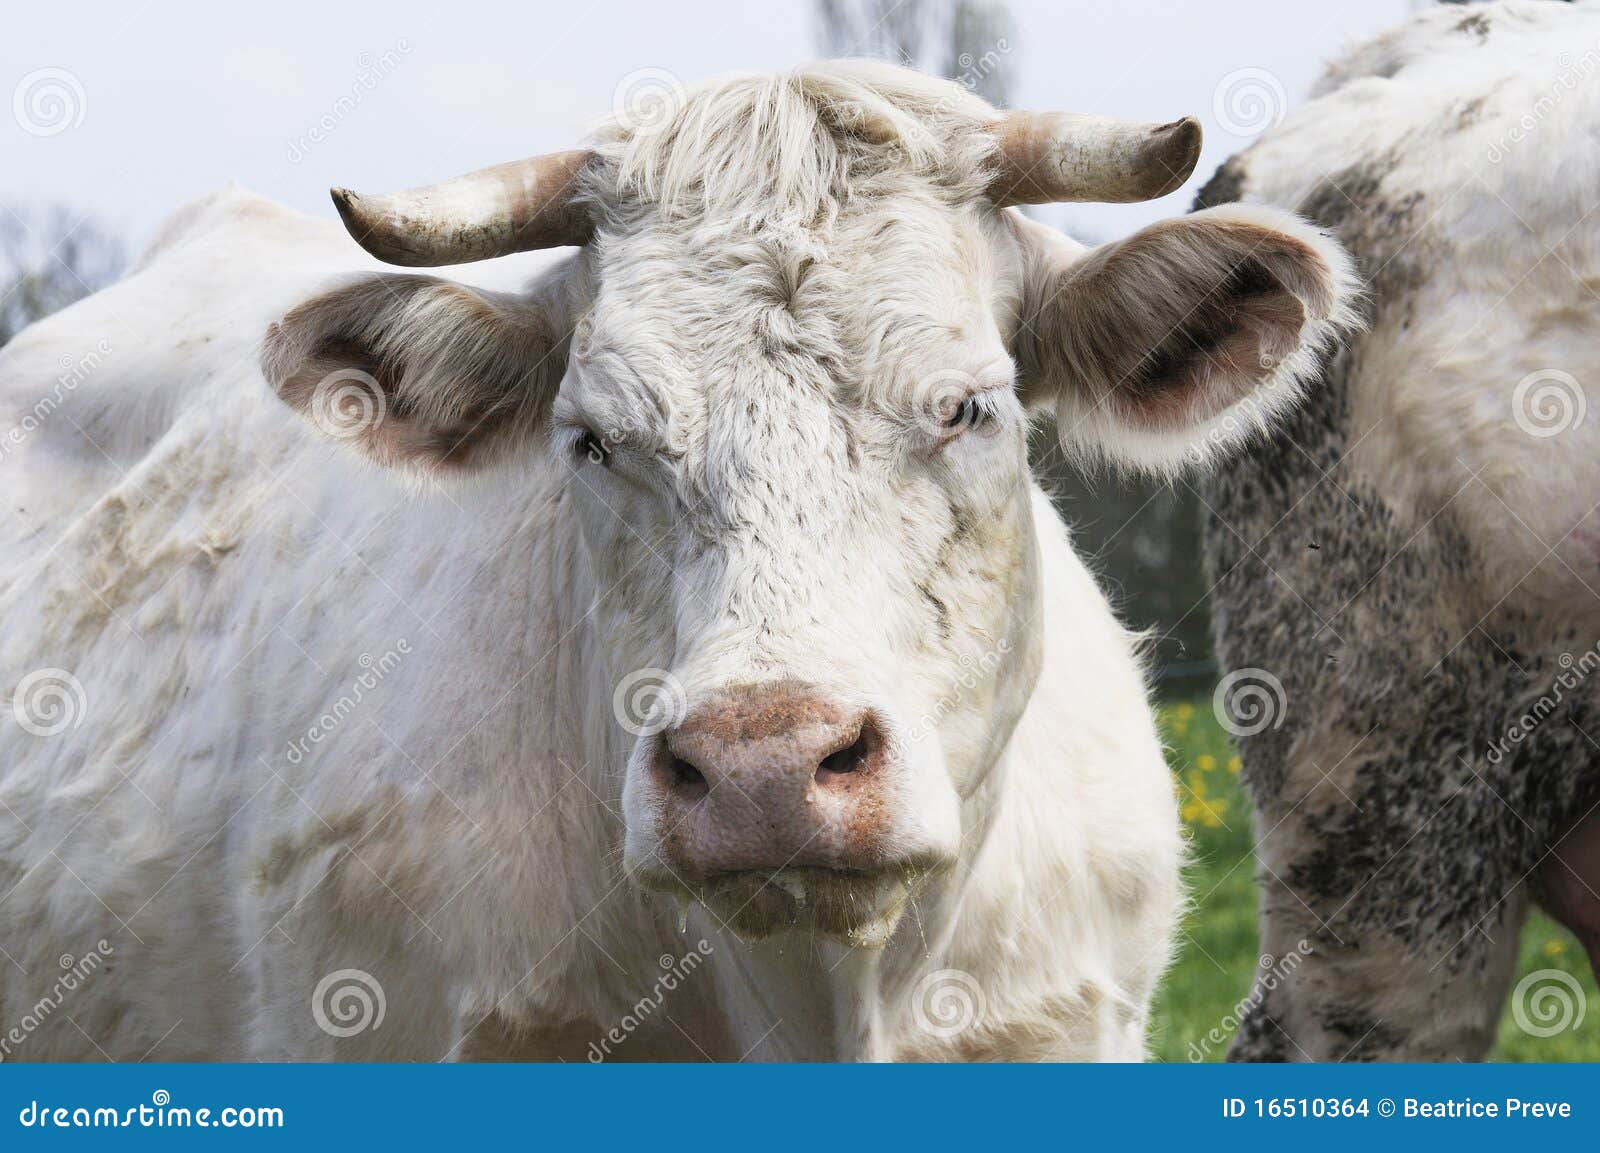 Nauwkeurigheid JEP Pedagogie Witte koeien stock foto. Image of landschap, landbouwbedrijf - 16510364